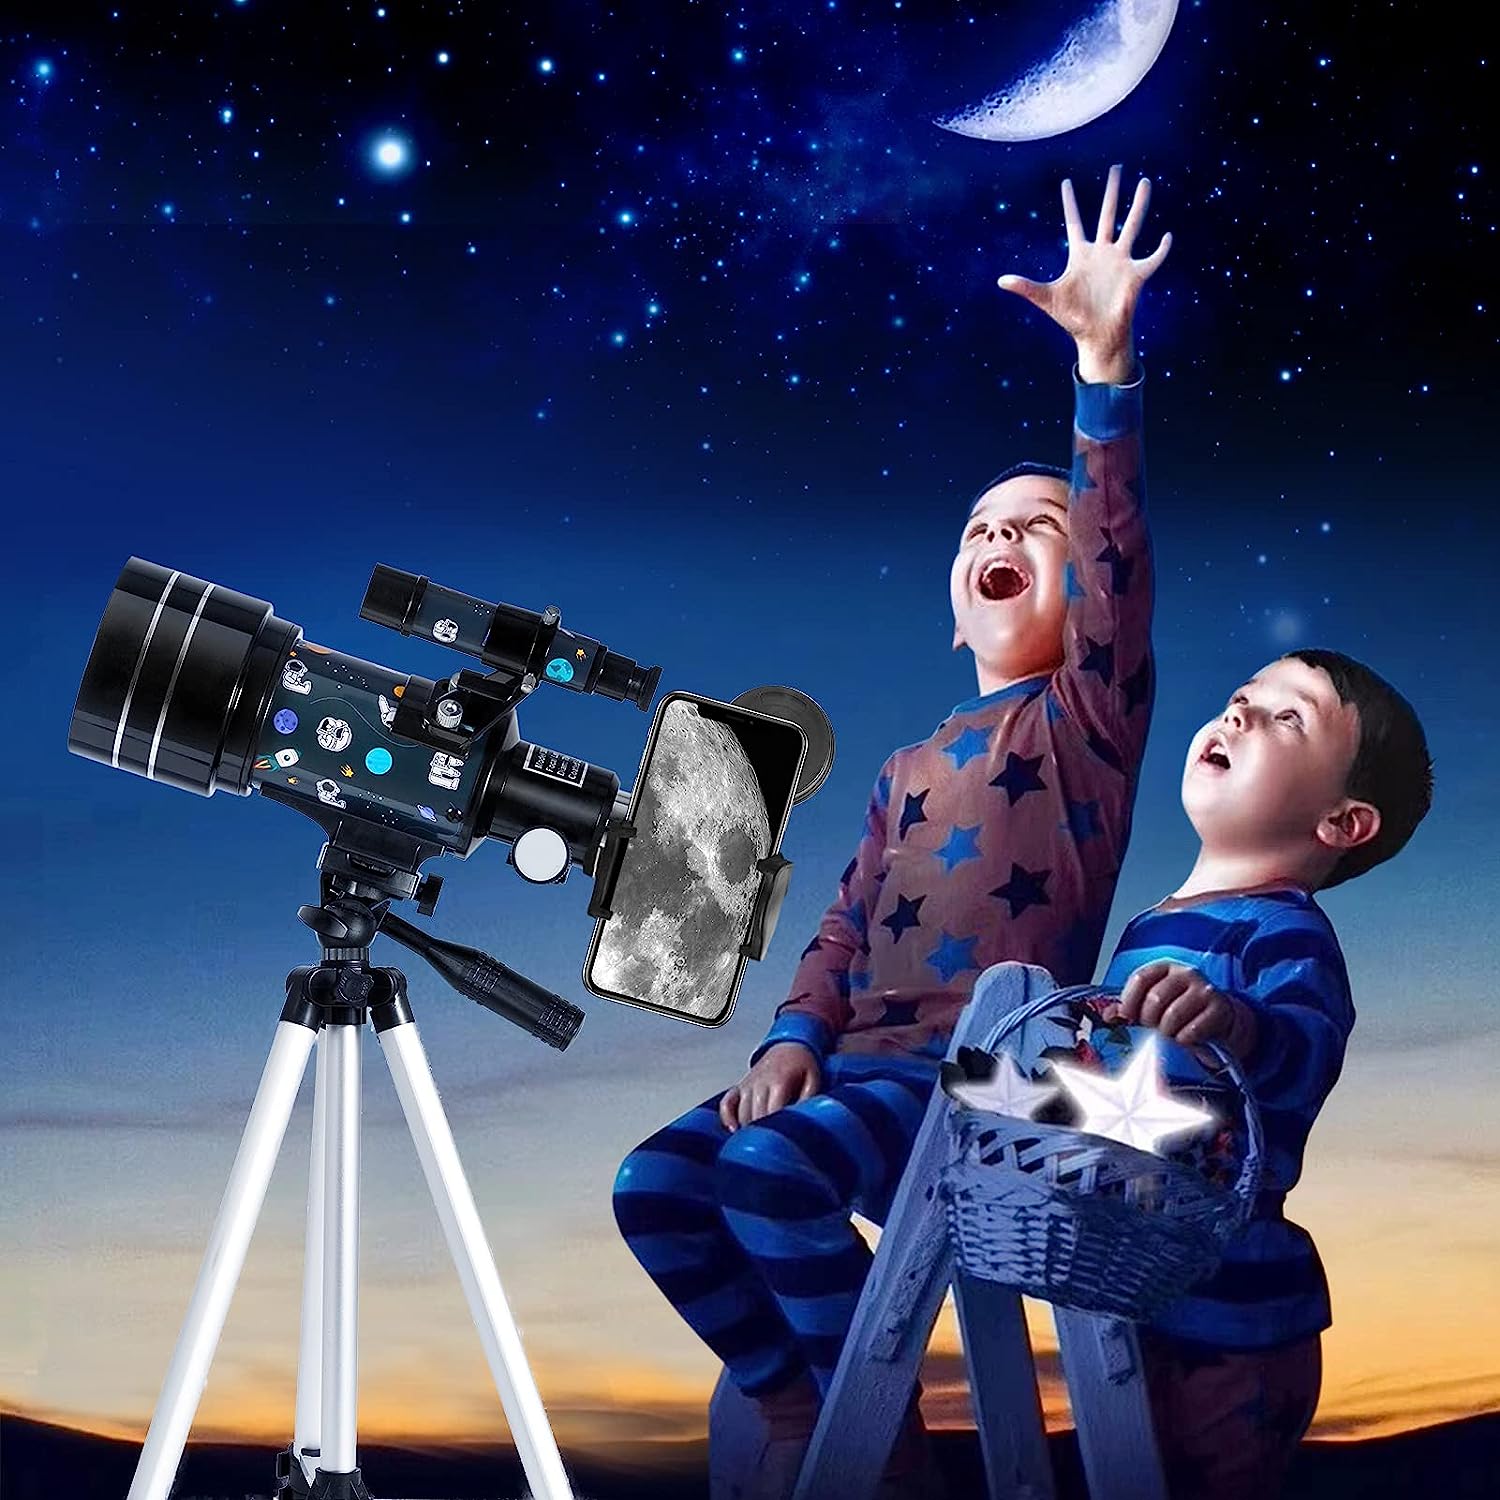 Telescopio para niños adultos principiantes - Telescopio refractor de apertura de 70 mm con trípode ajustable Adaptador de teléfono Control remoto inalámbrico